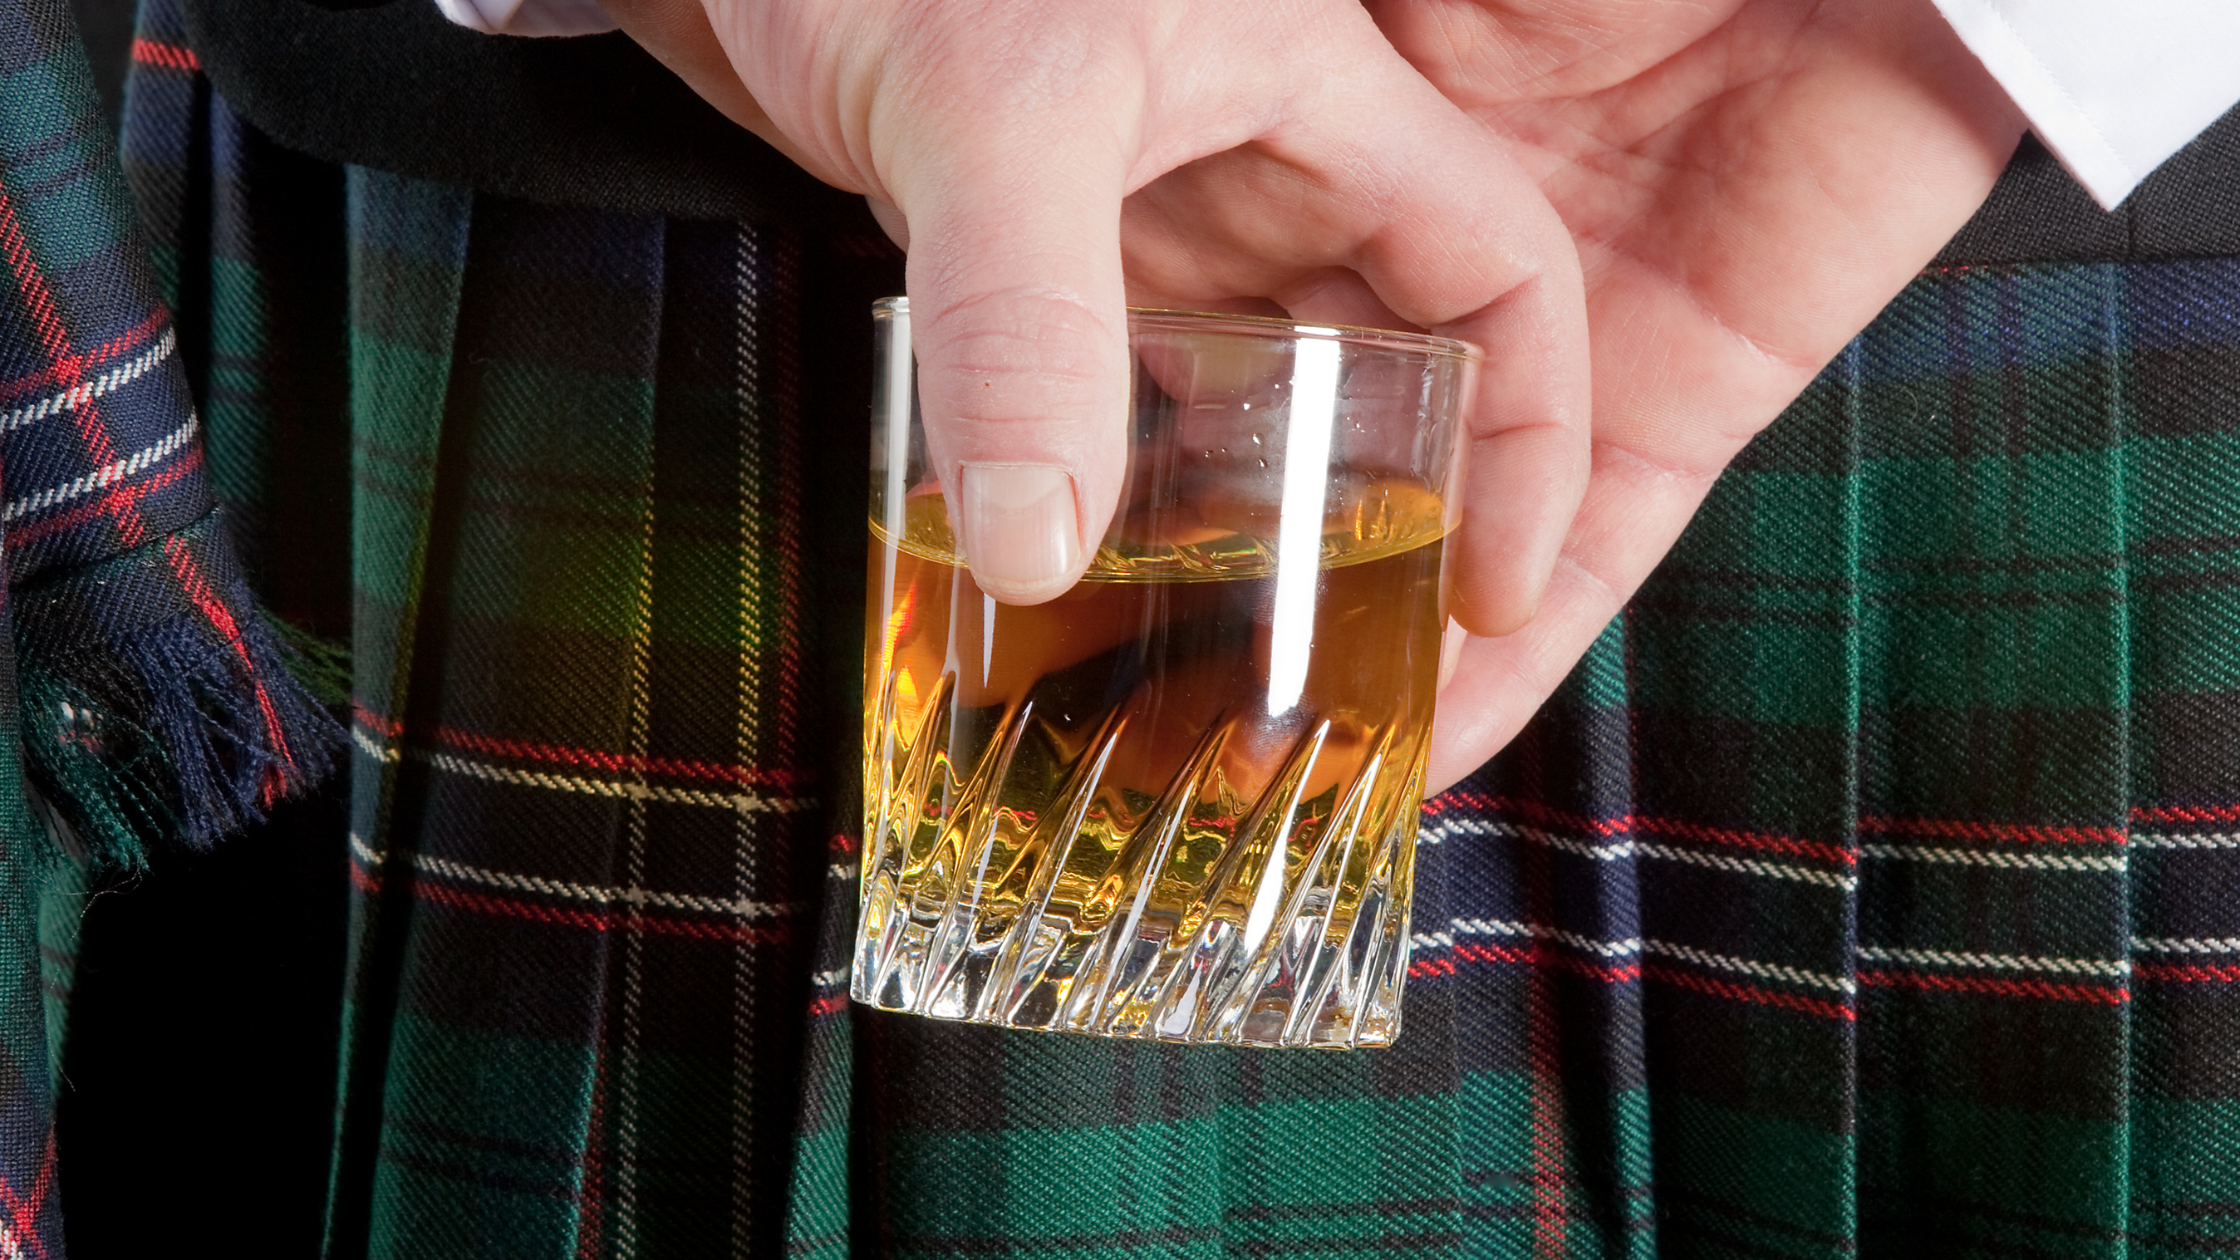 come bere dello scotch whisky